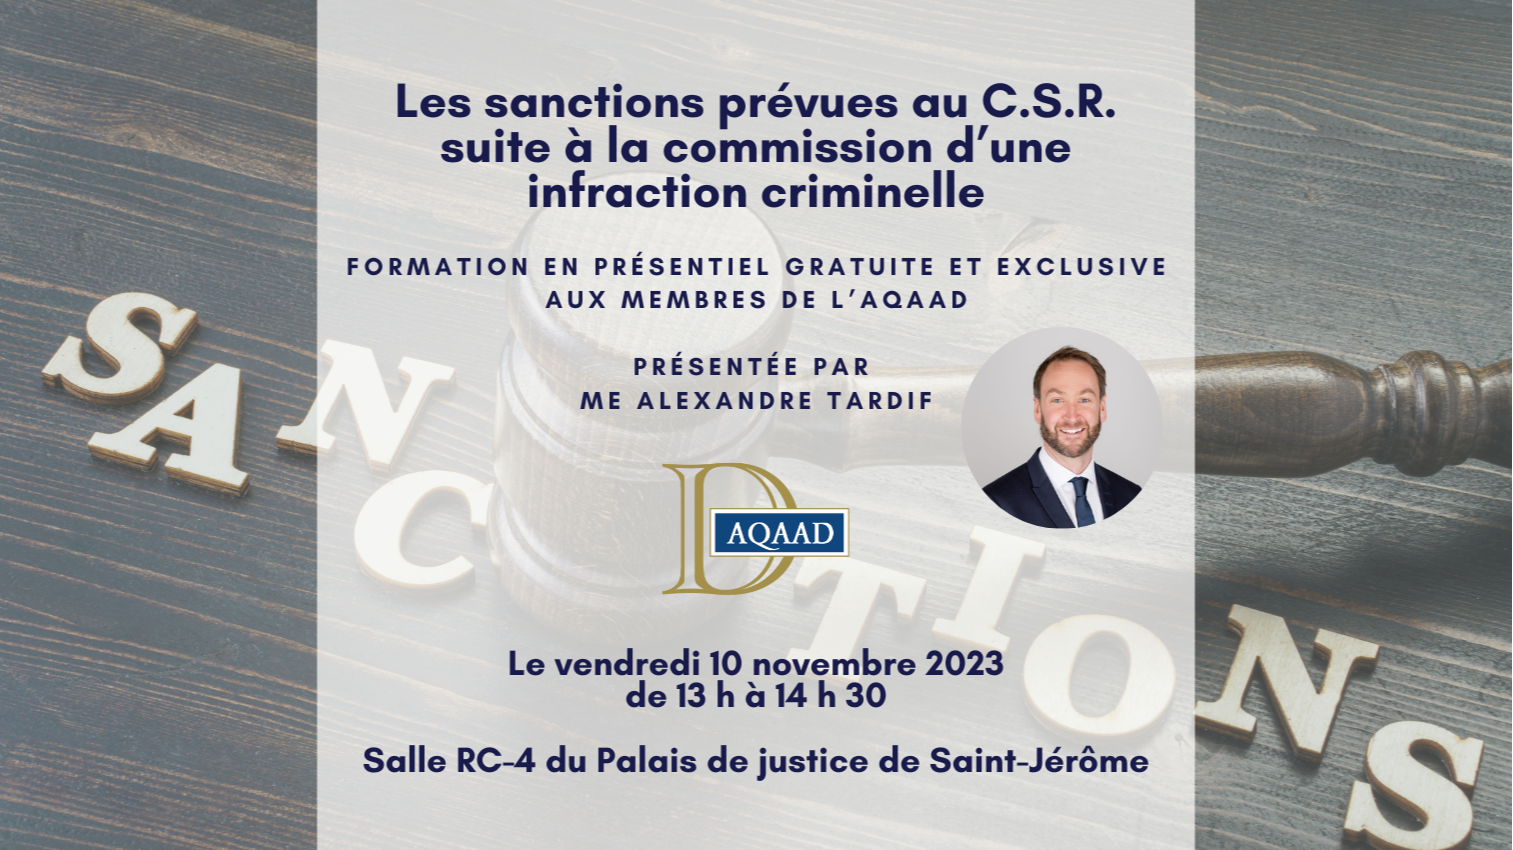 SAINT-JÉRÔME - Les sanctions prévues au C.S.R. suite à la commission d'une infraction criminelle